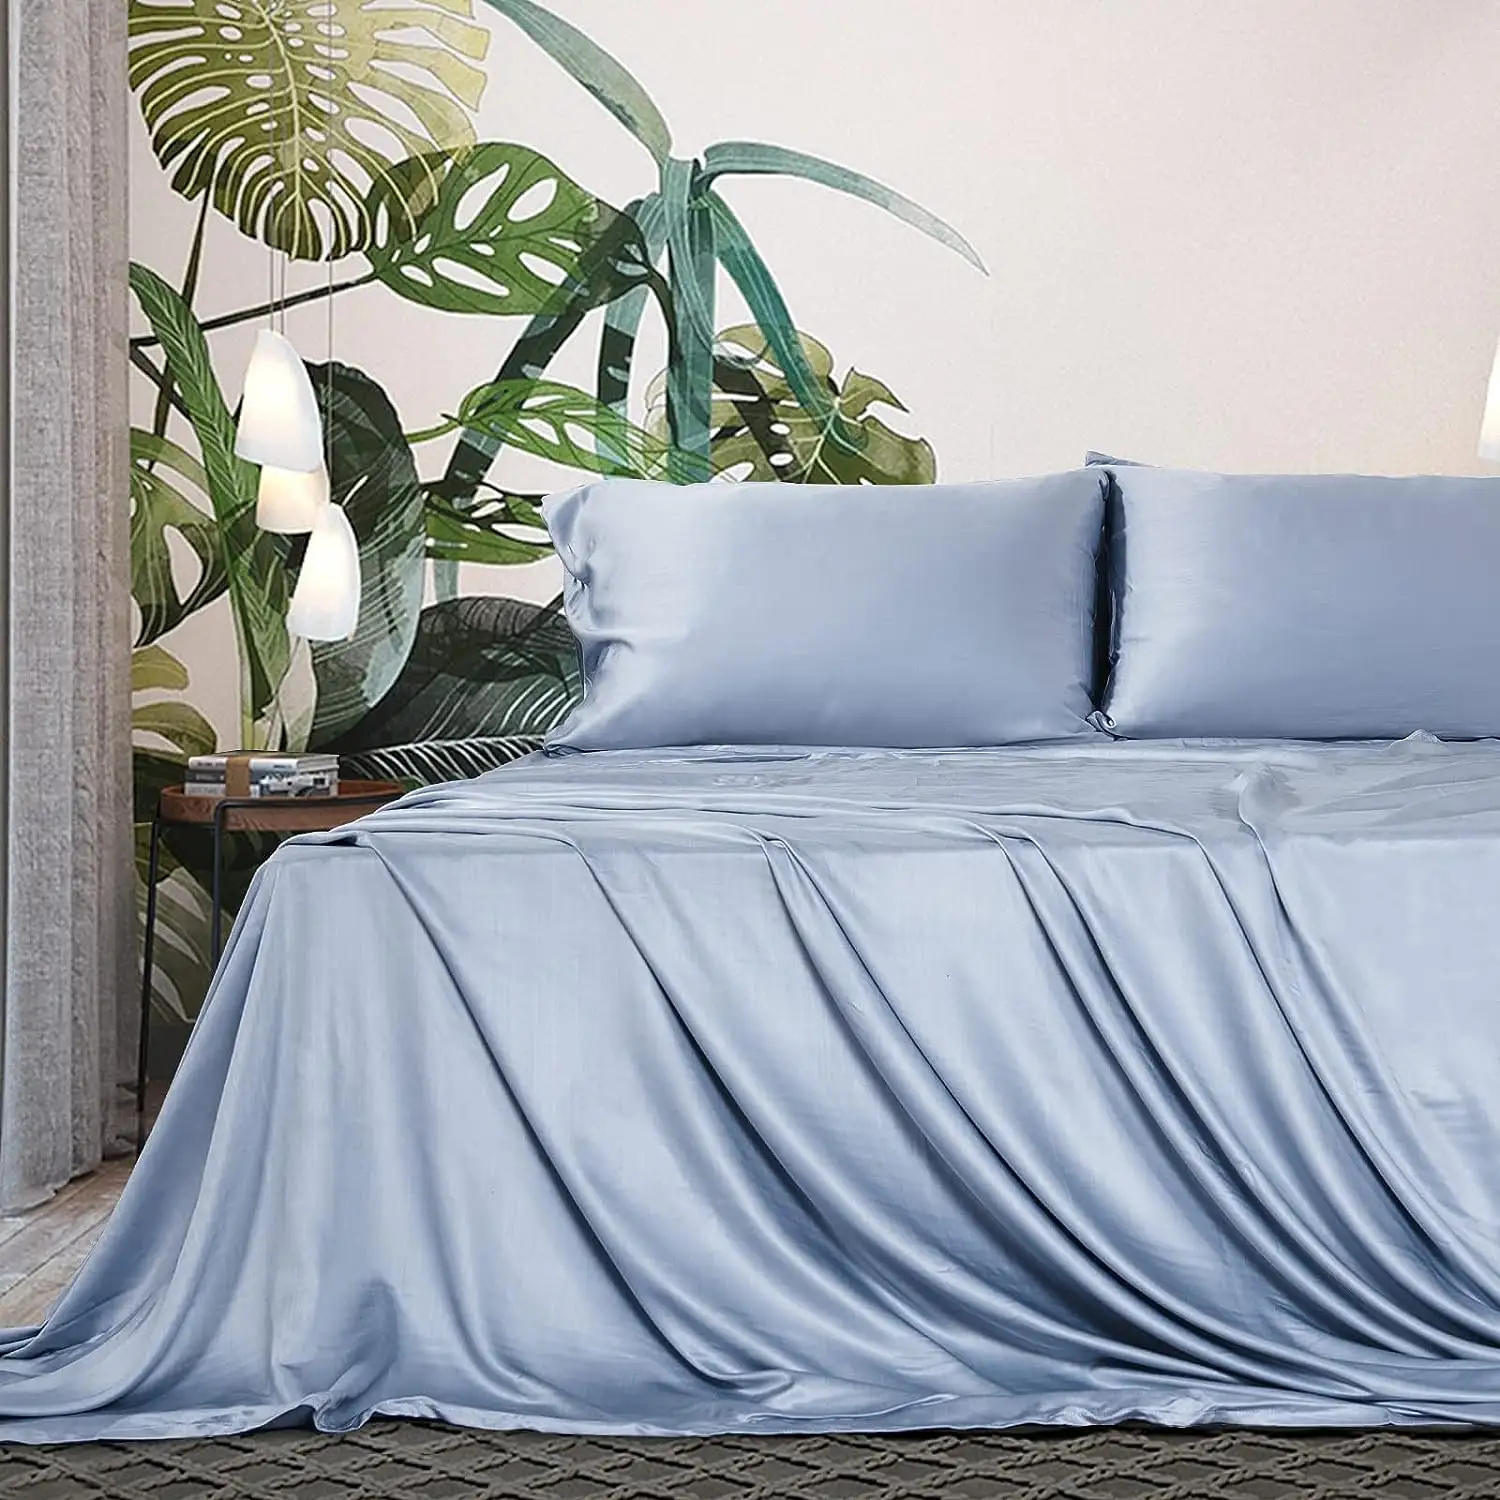 ผ้าปูที่นอนหรูหรา Tencel บริสุทธิ์ 100% ผ้าปูที่นอนขนาดคิงไซส์ชุดเครื่องนอนผ้าปูที่นอนไลโอเซลล์ผ้าปูที่นอนกระเป๋าลึก